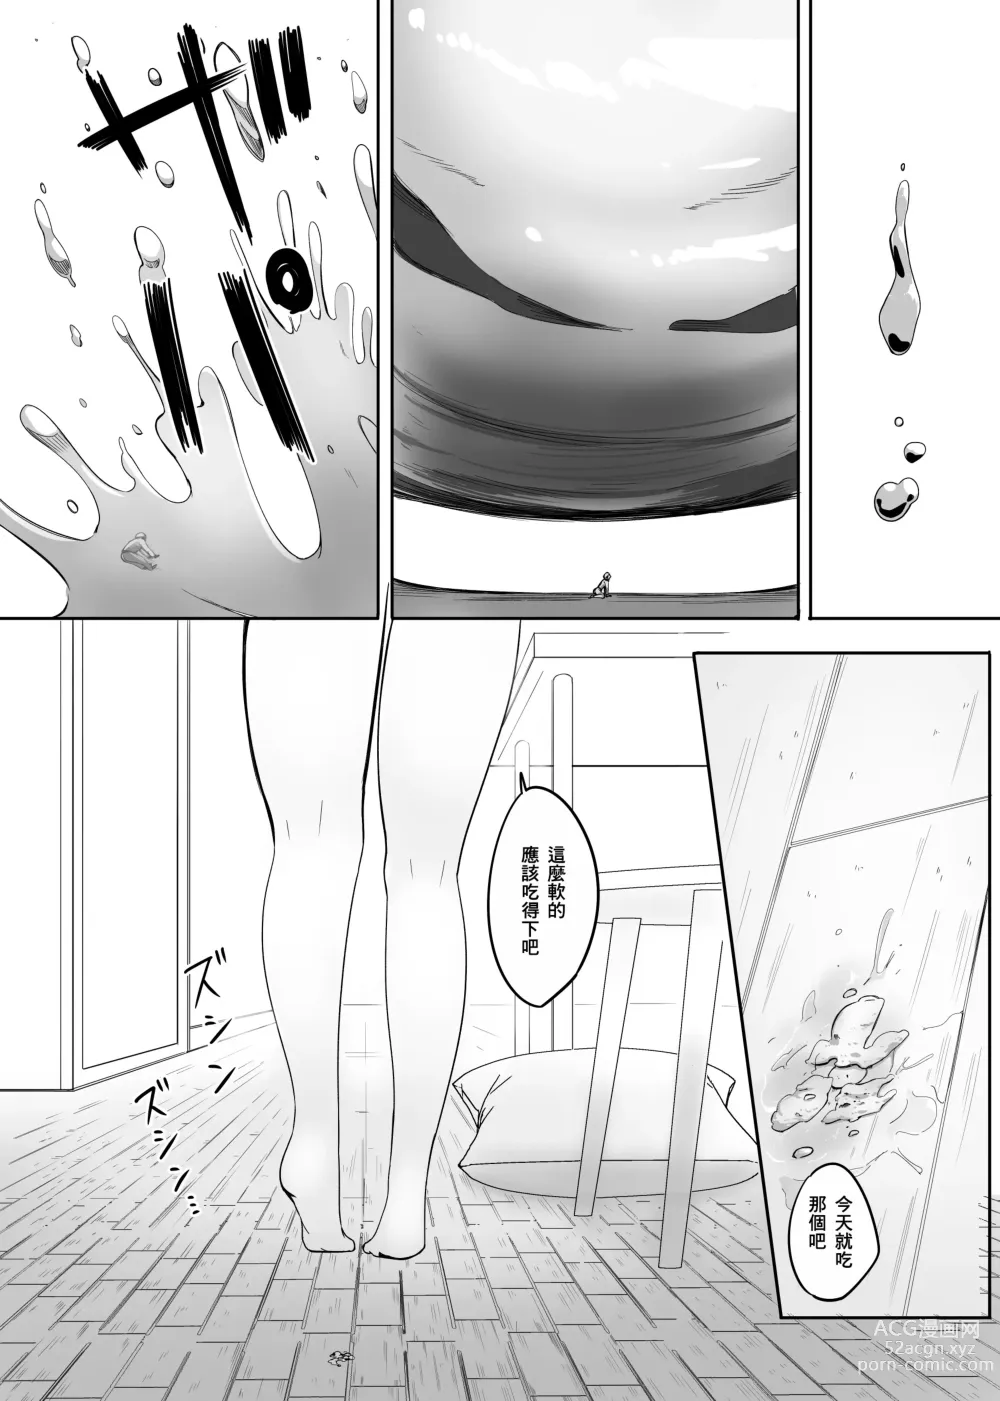 Page 59 of doujinshi Henbou